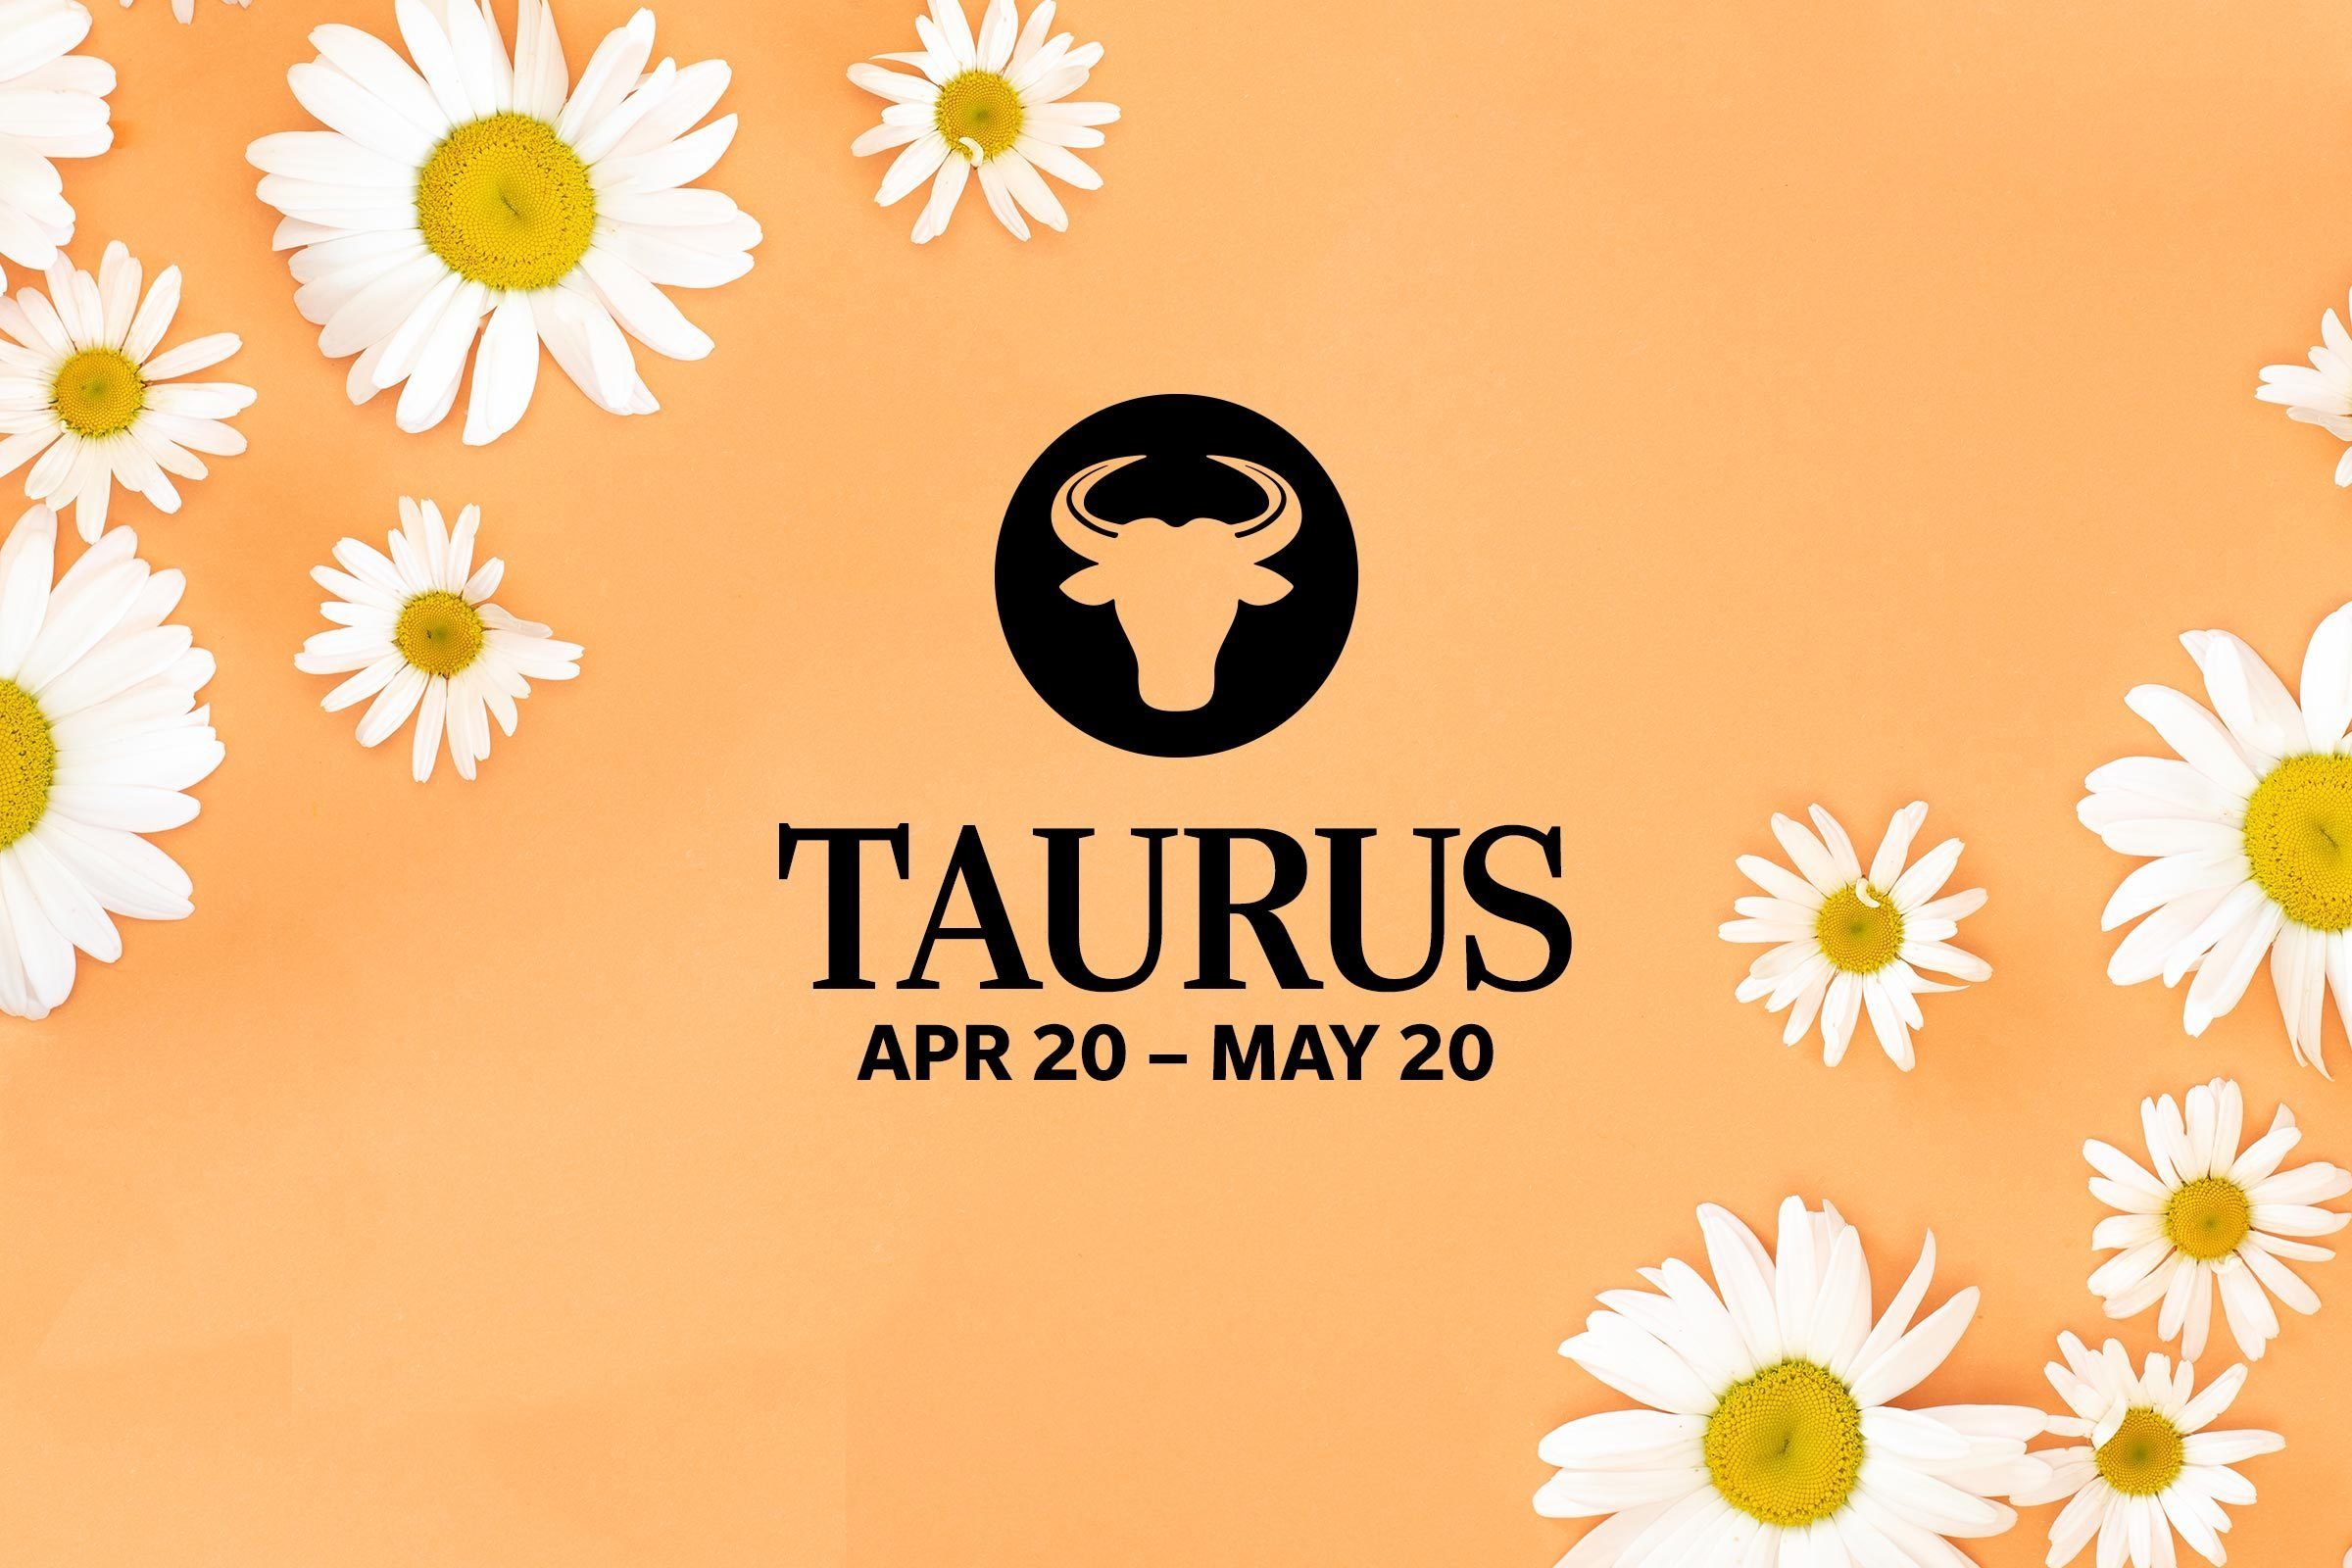 Taurus (April 20-May 20)